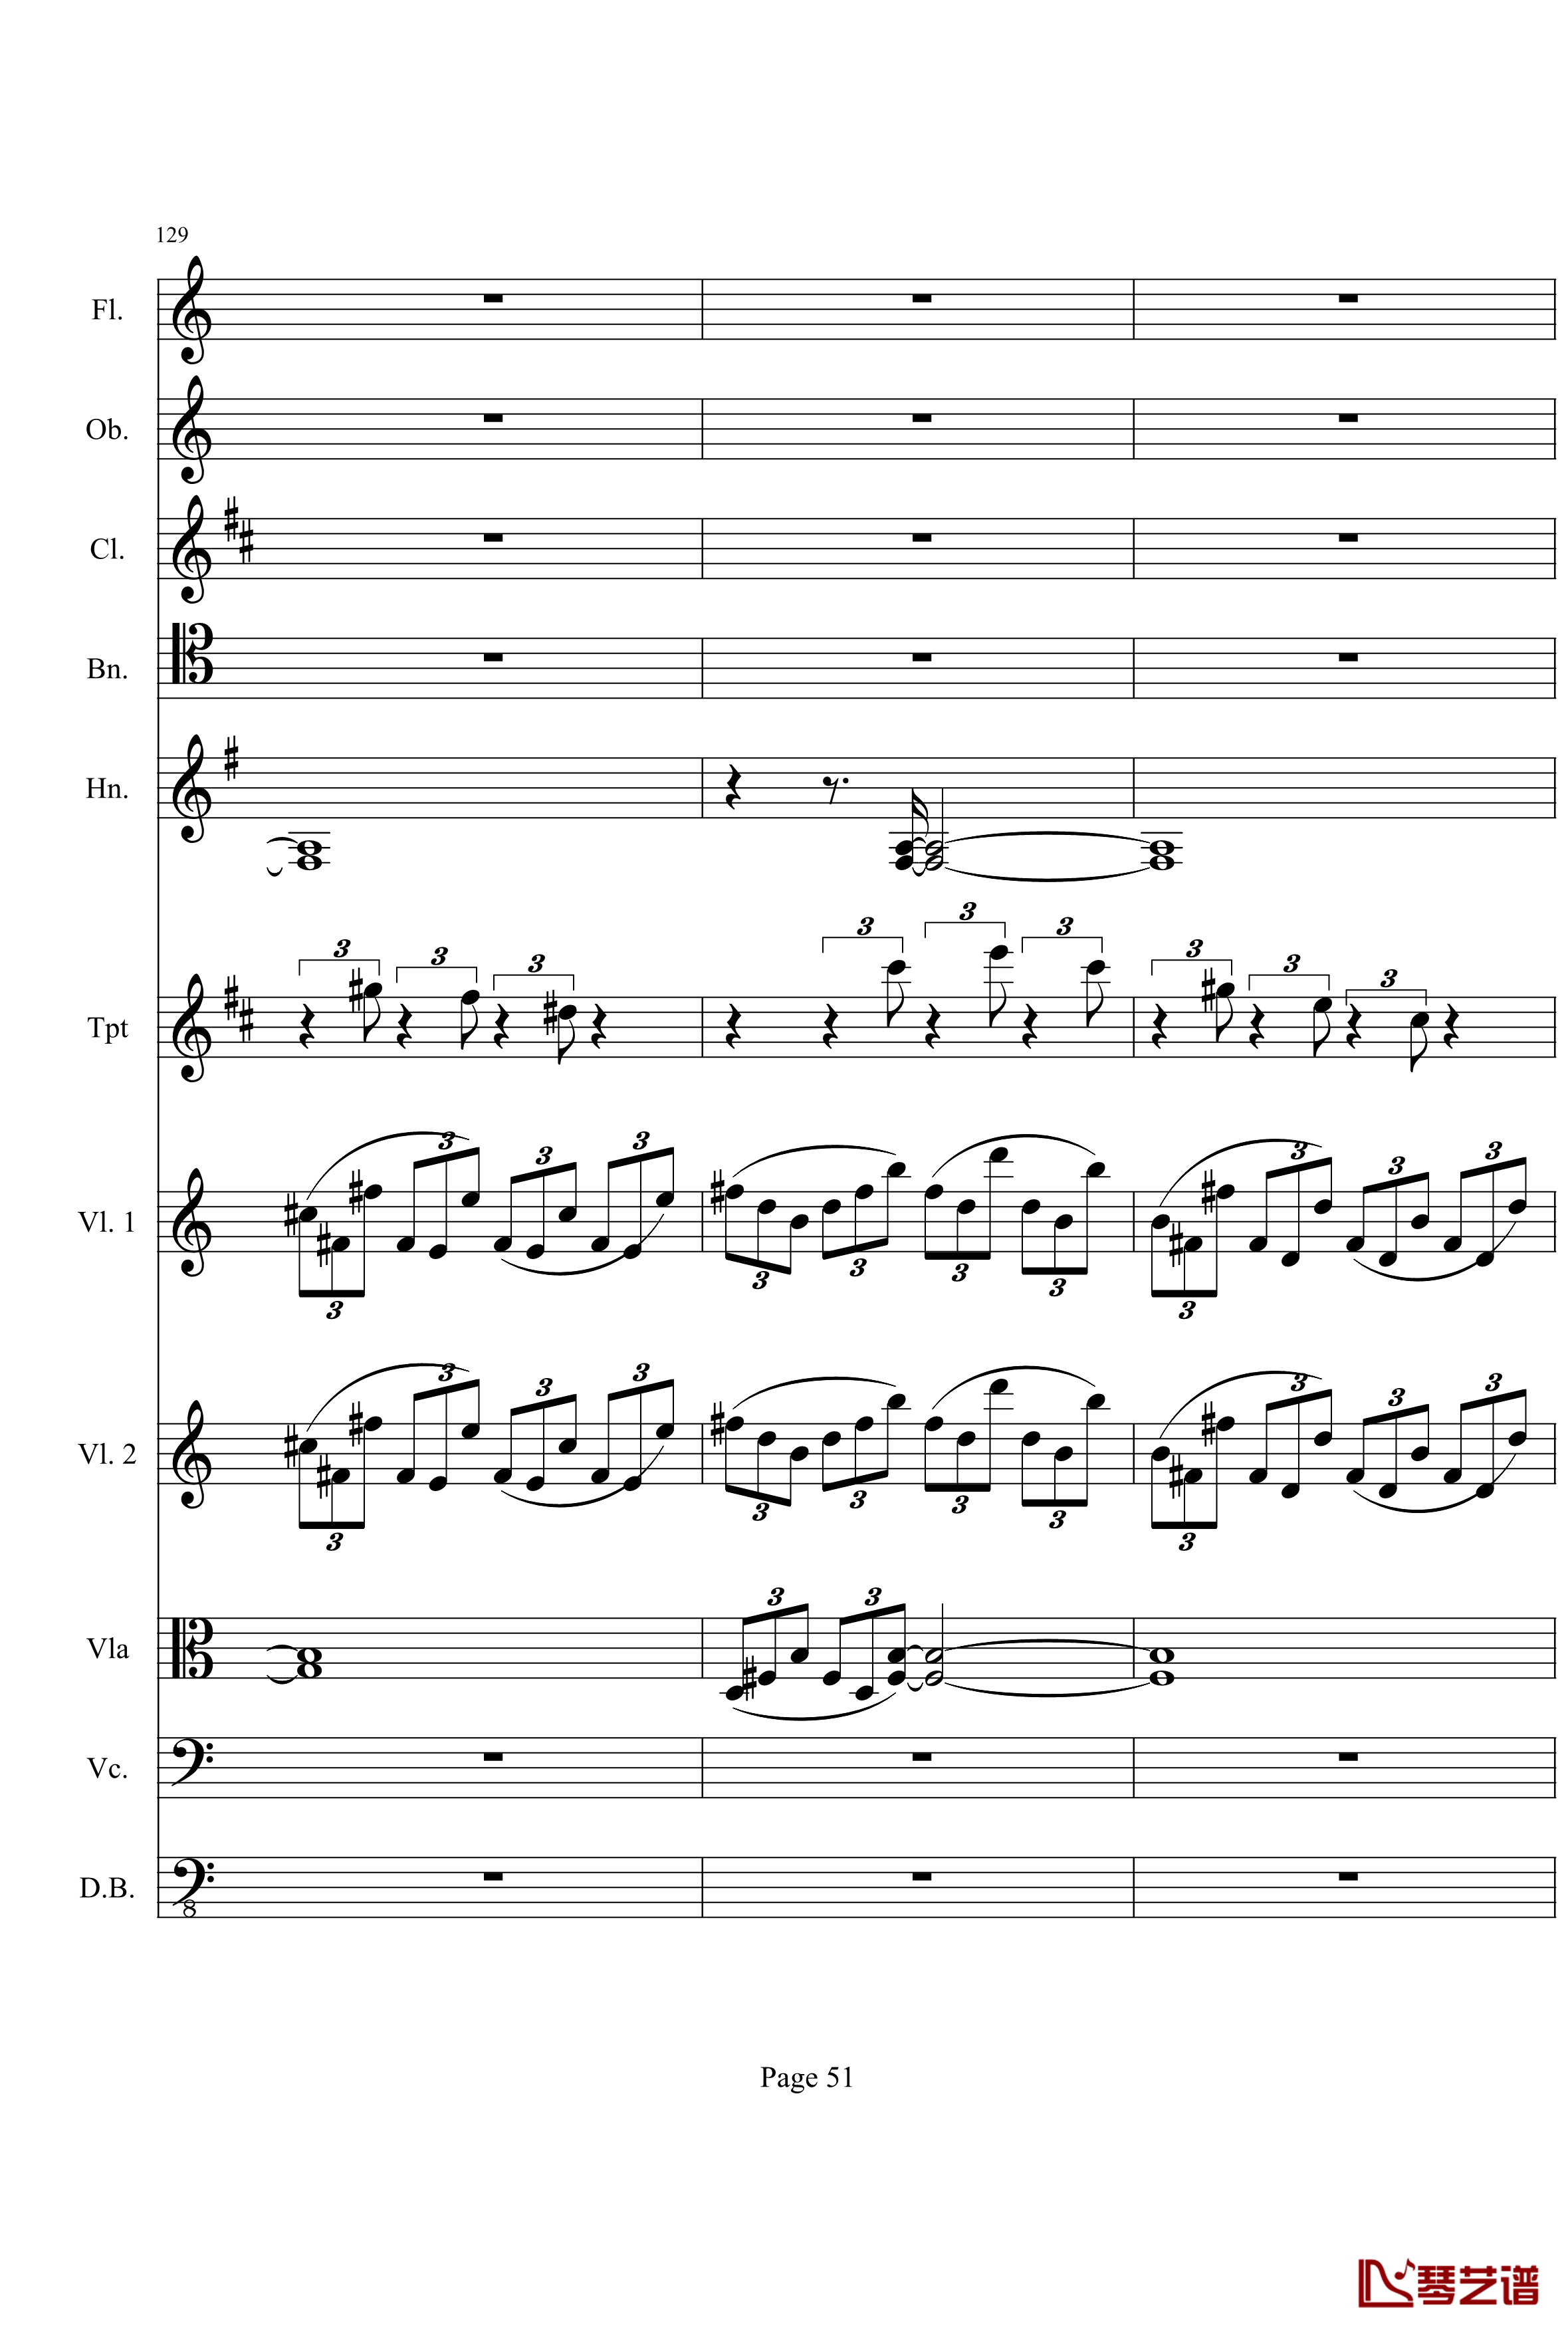 奏鸣曲之交响钢琴谱-第21首-Ⅰ-贝多芬-beethoven51